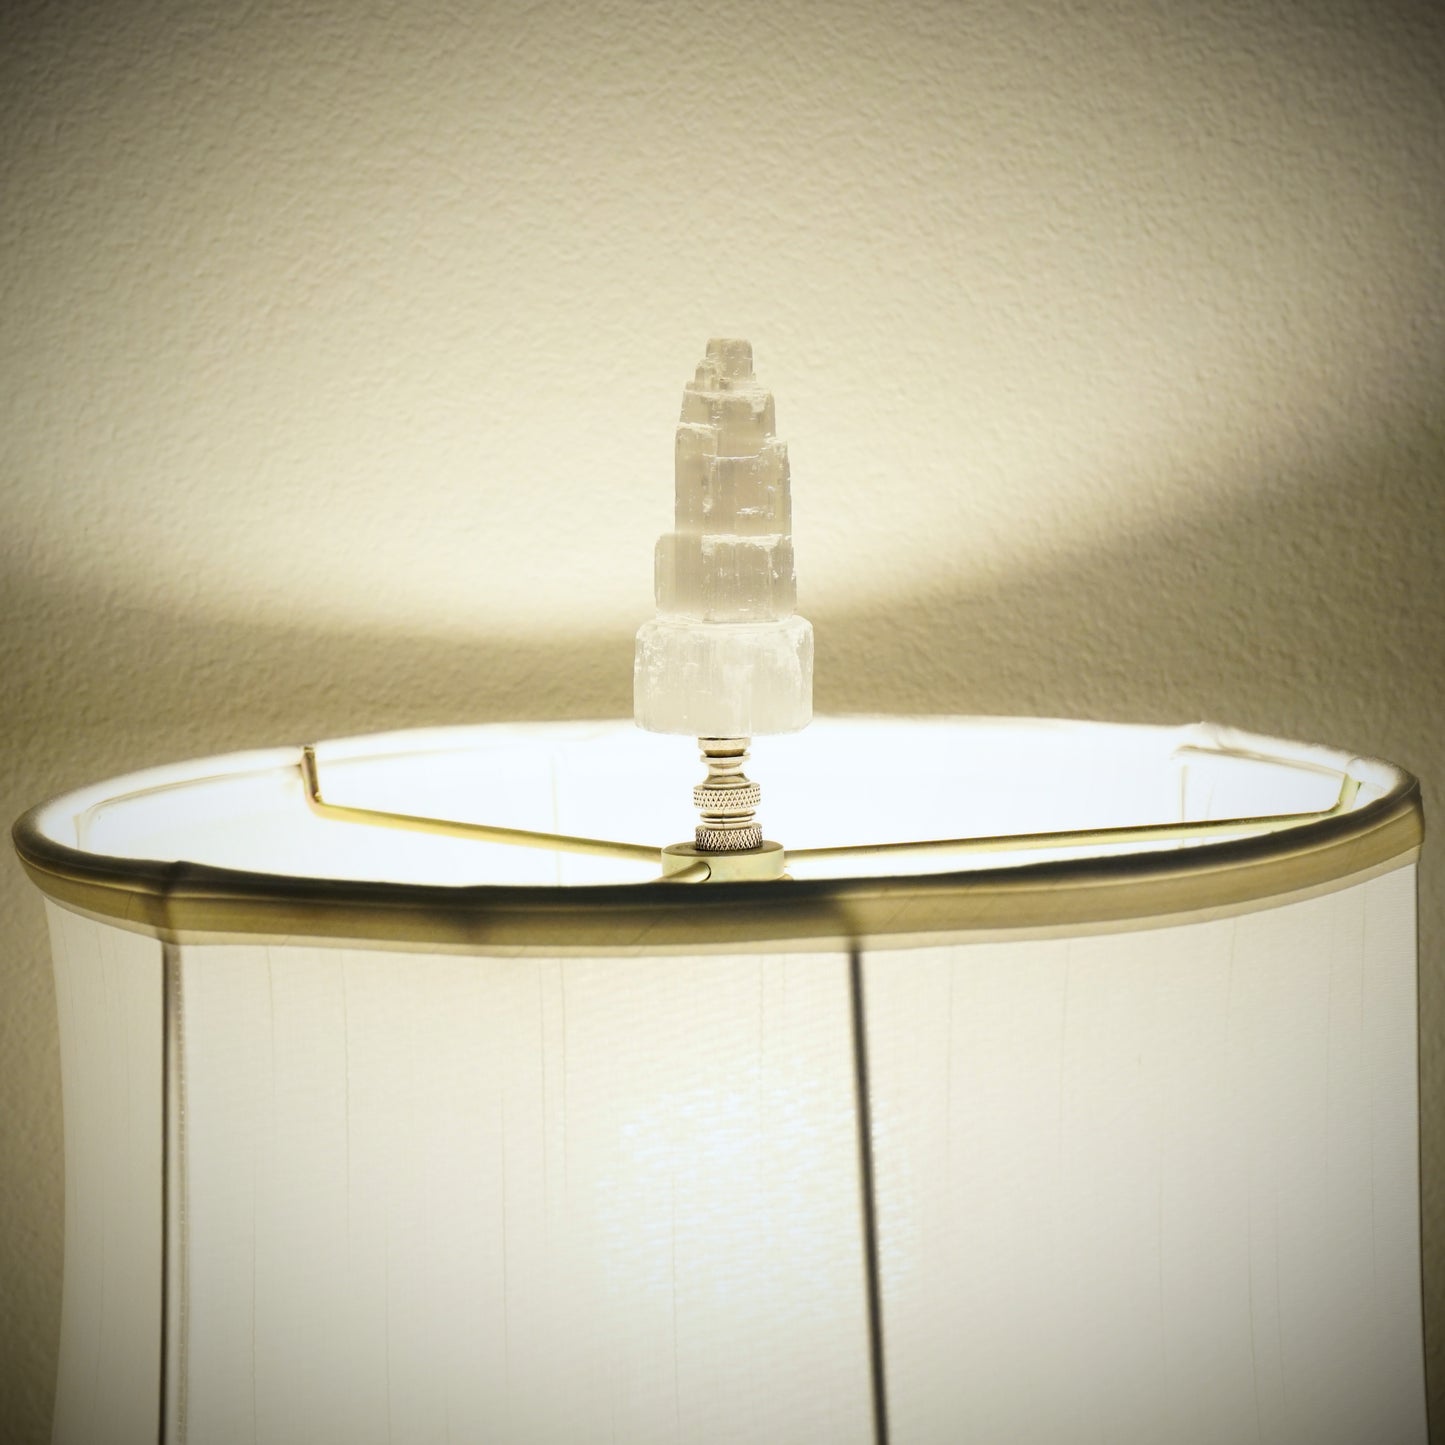 Lamp Harp Finial - Selenite Crystal Tower